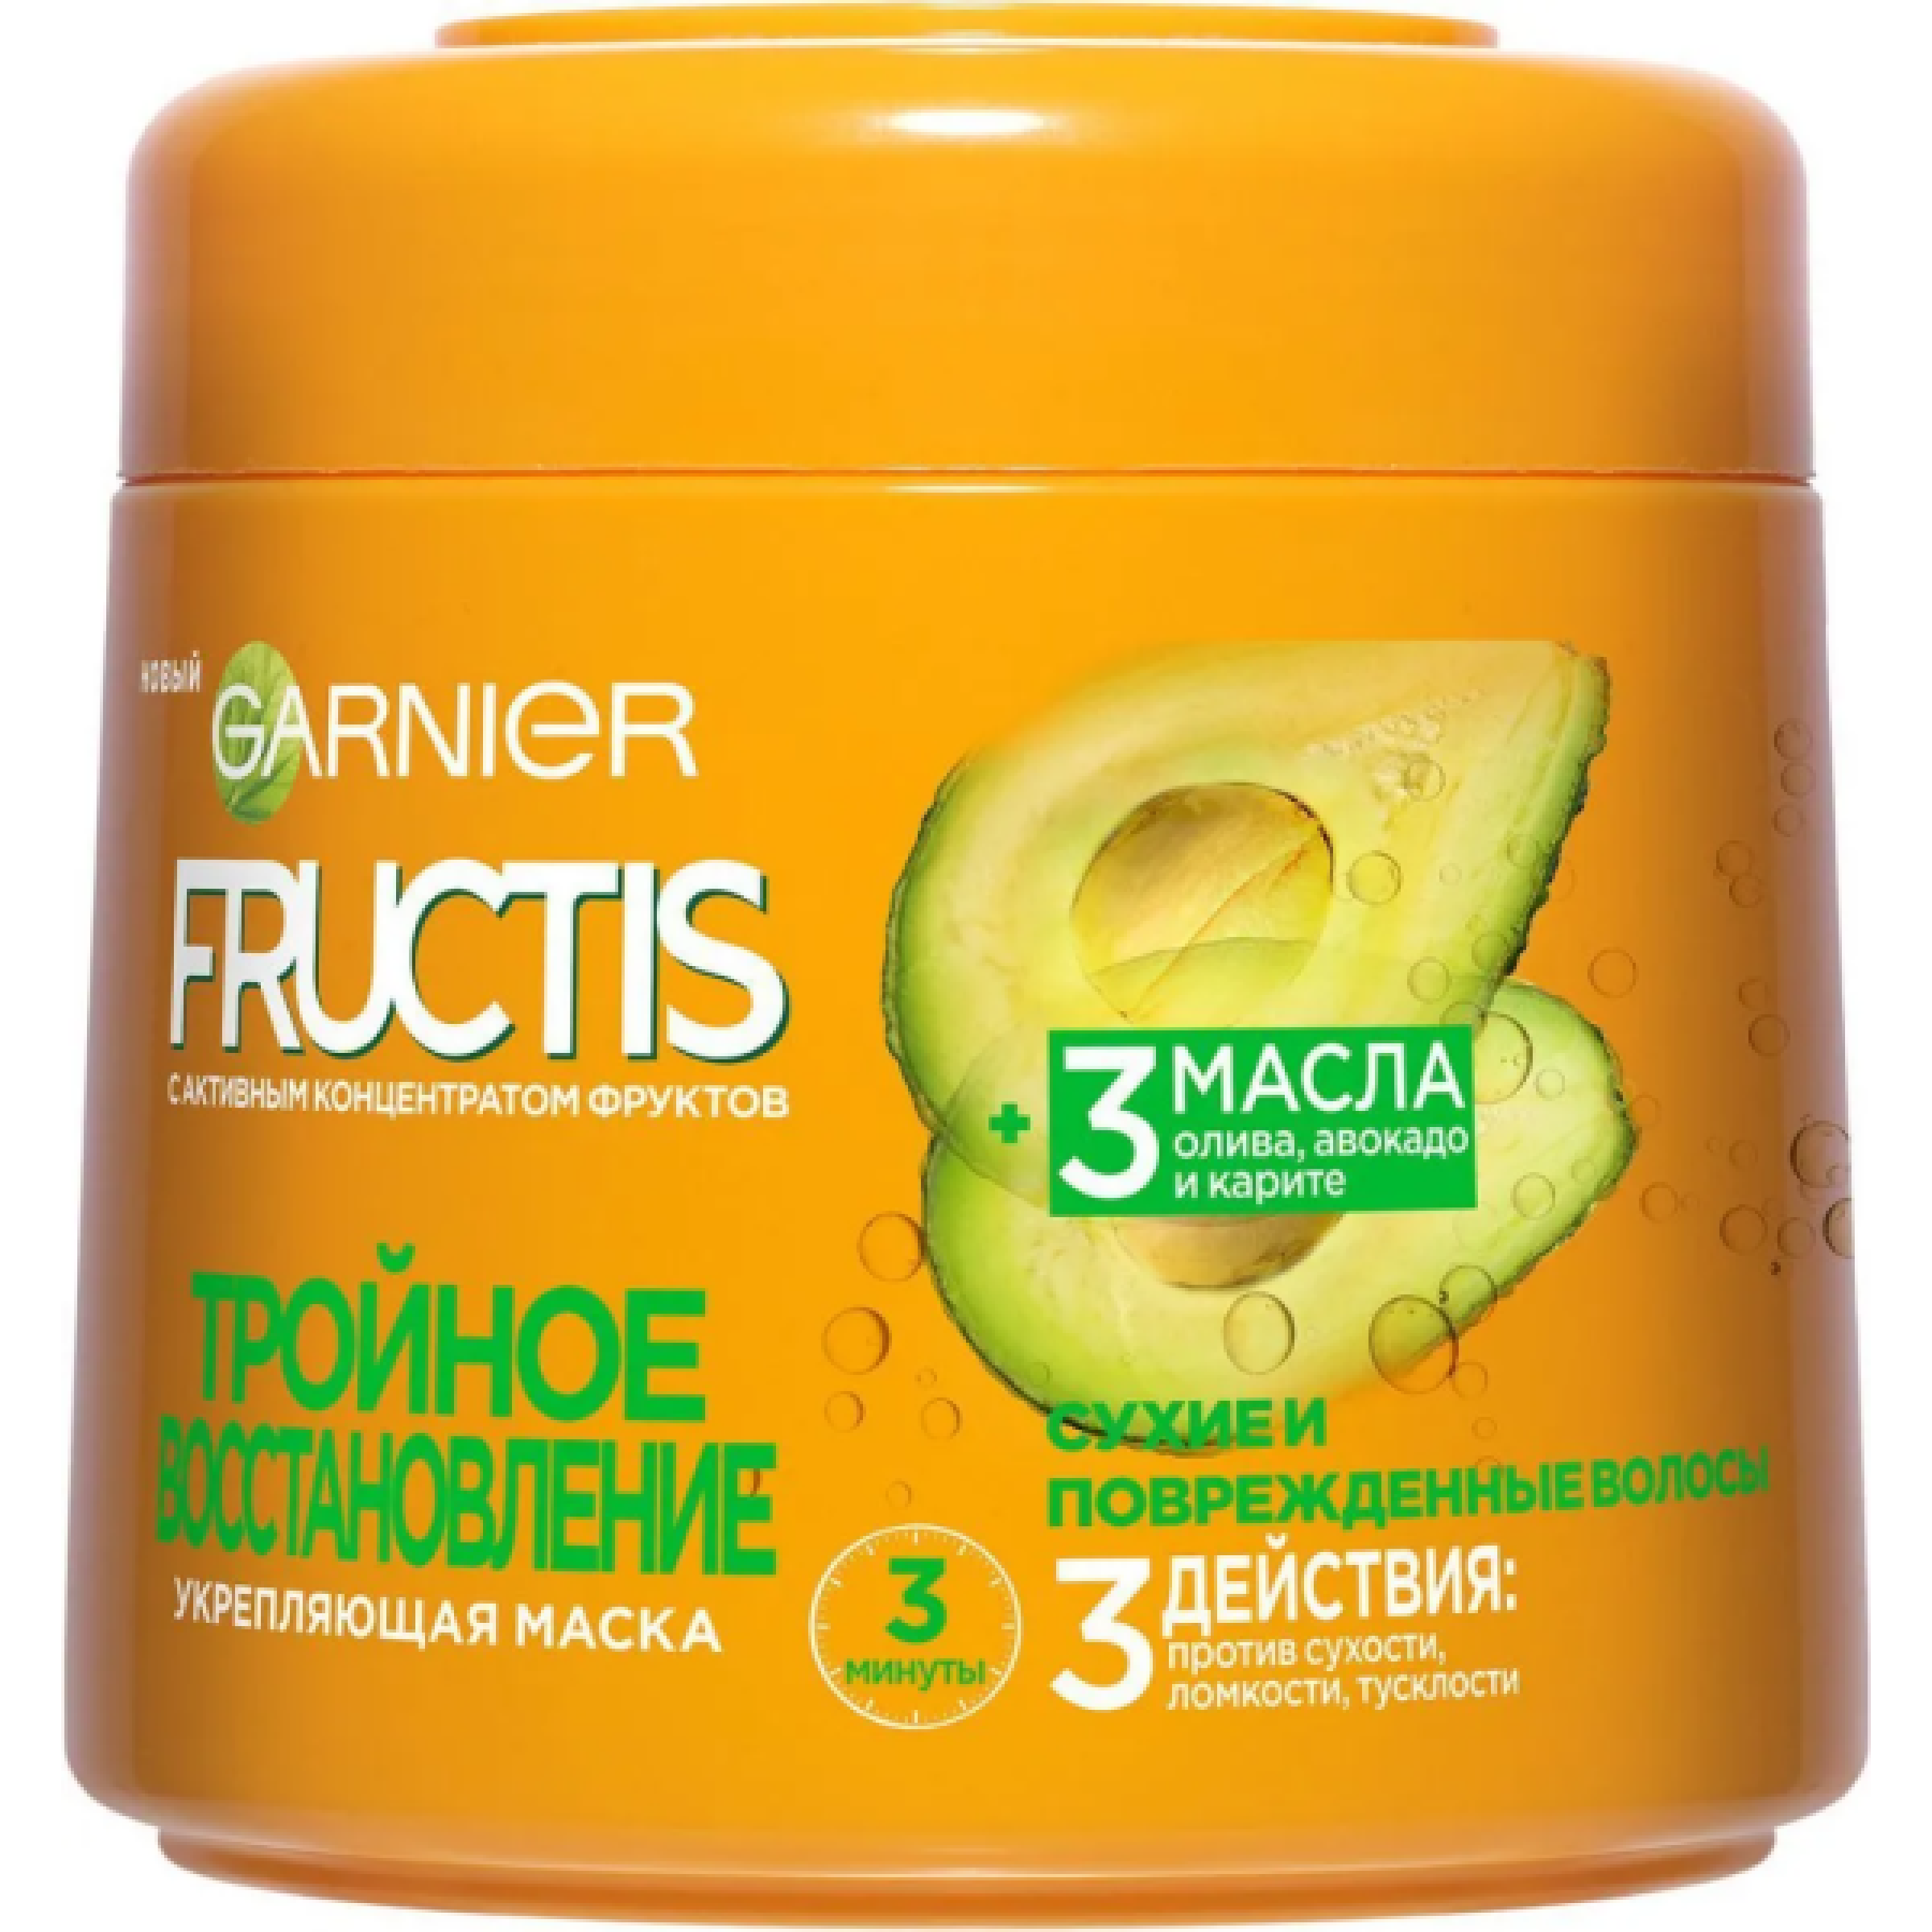 Укрепляющая маска для волос Garnier Fructis Тройное Восстановление для поврежденных и ослабленных волос, 300 мл